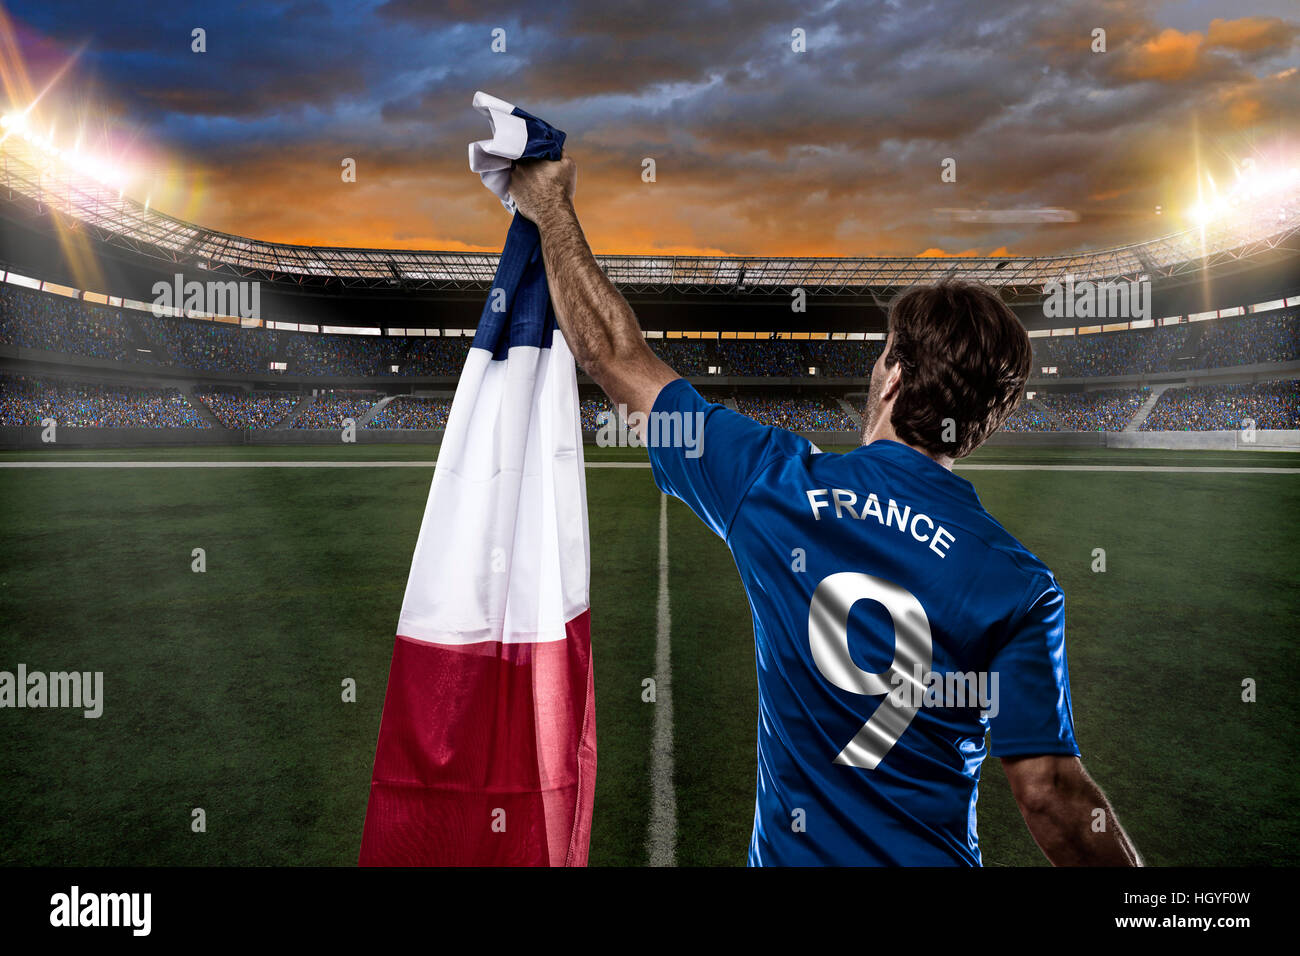 Joueur de football français, de célébrer avec les fans. Banque D'Images